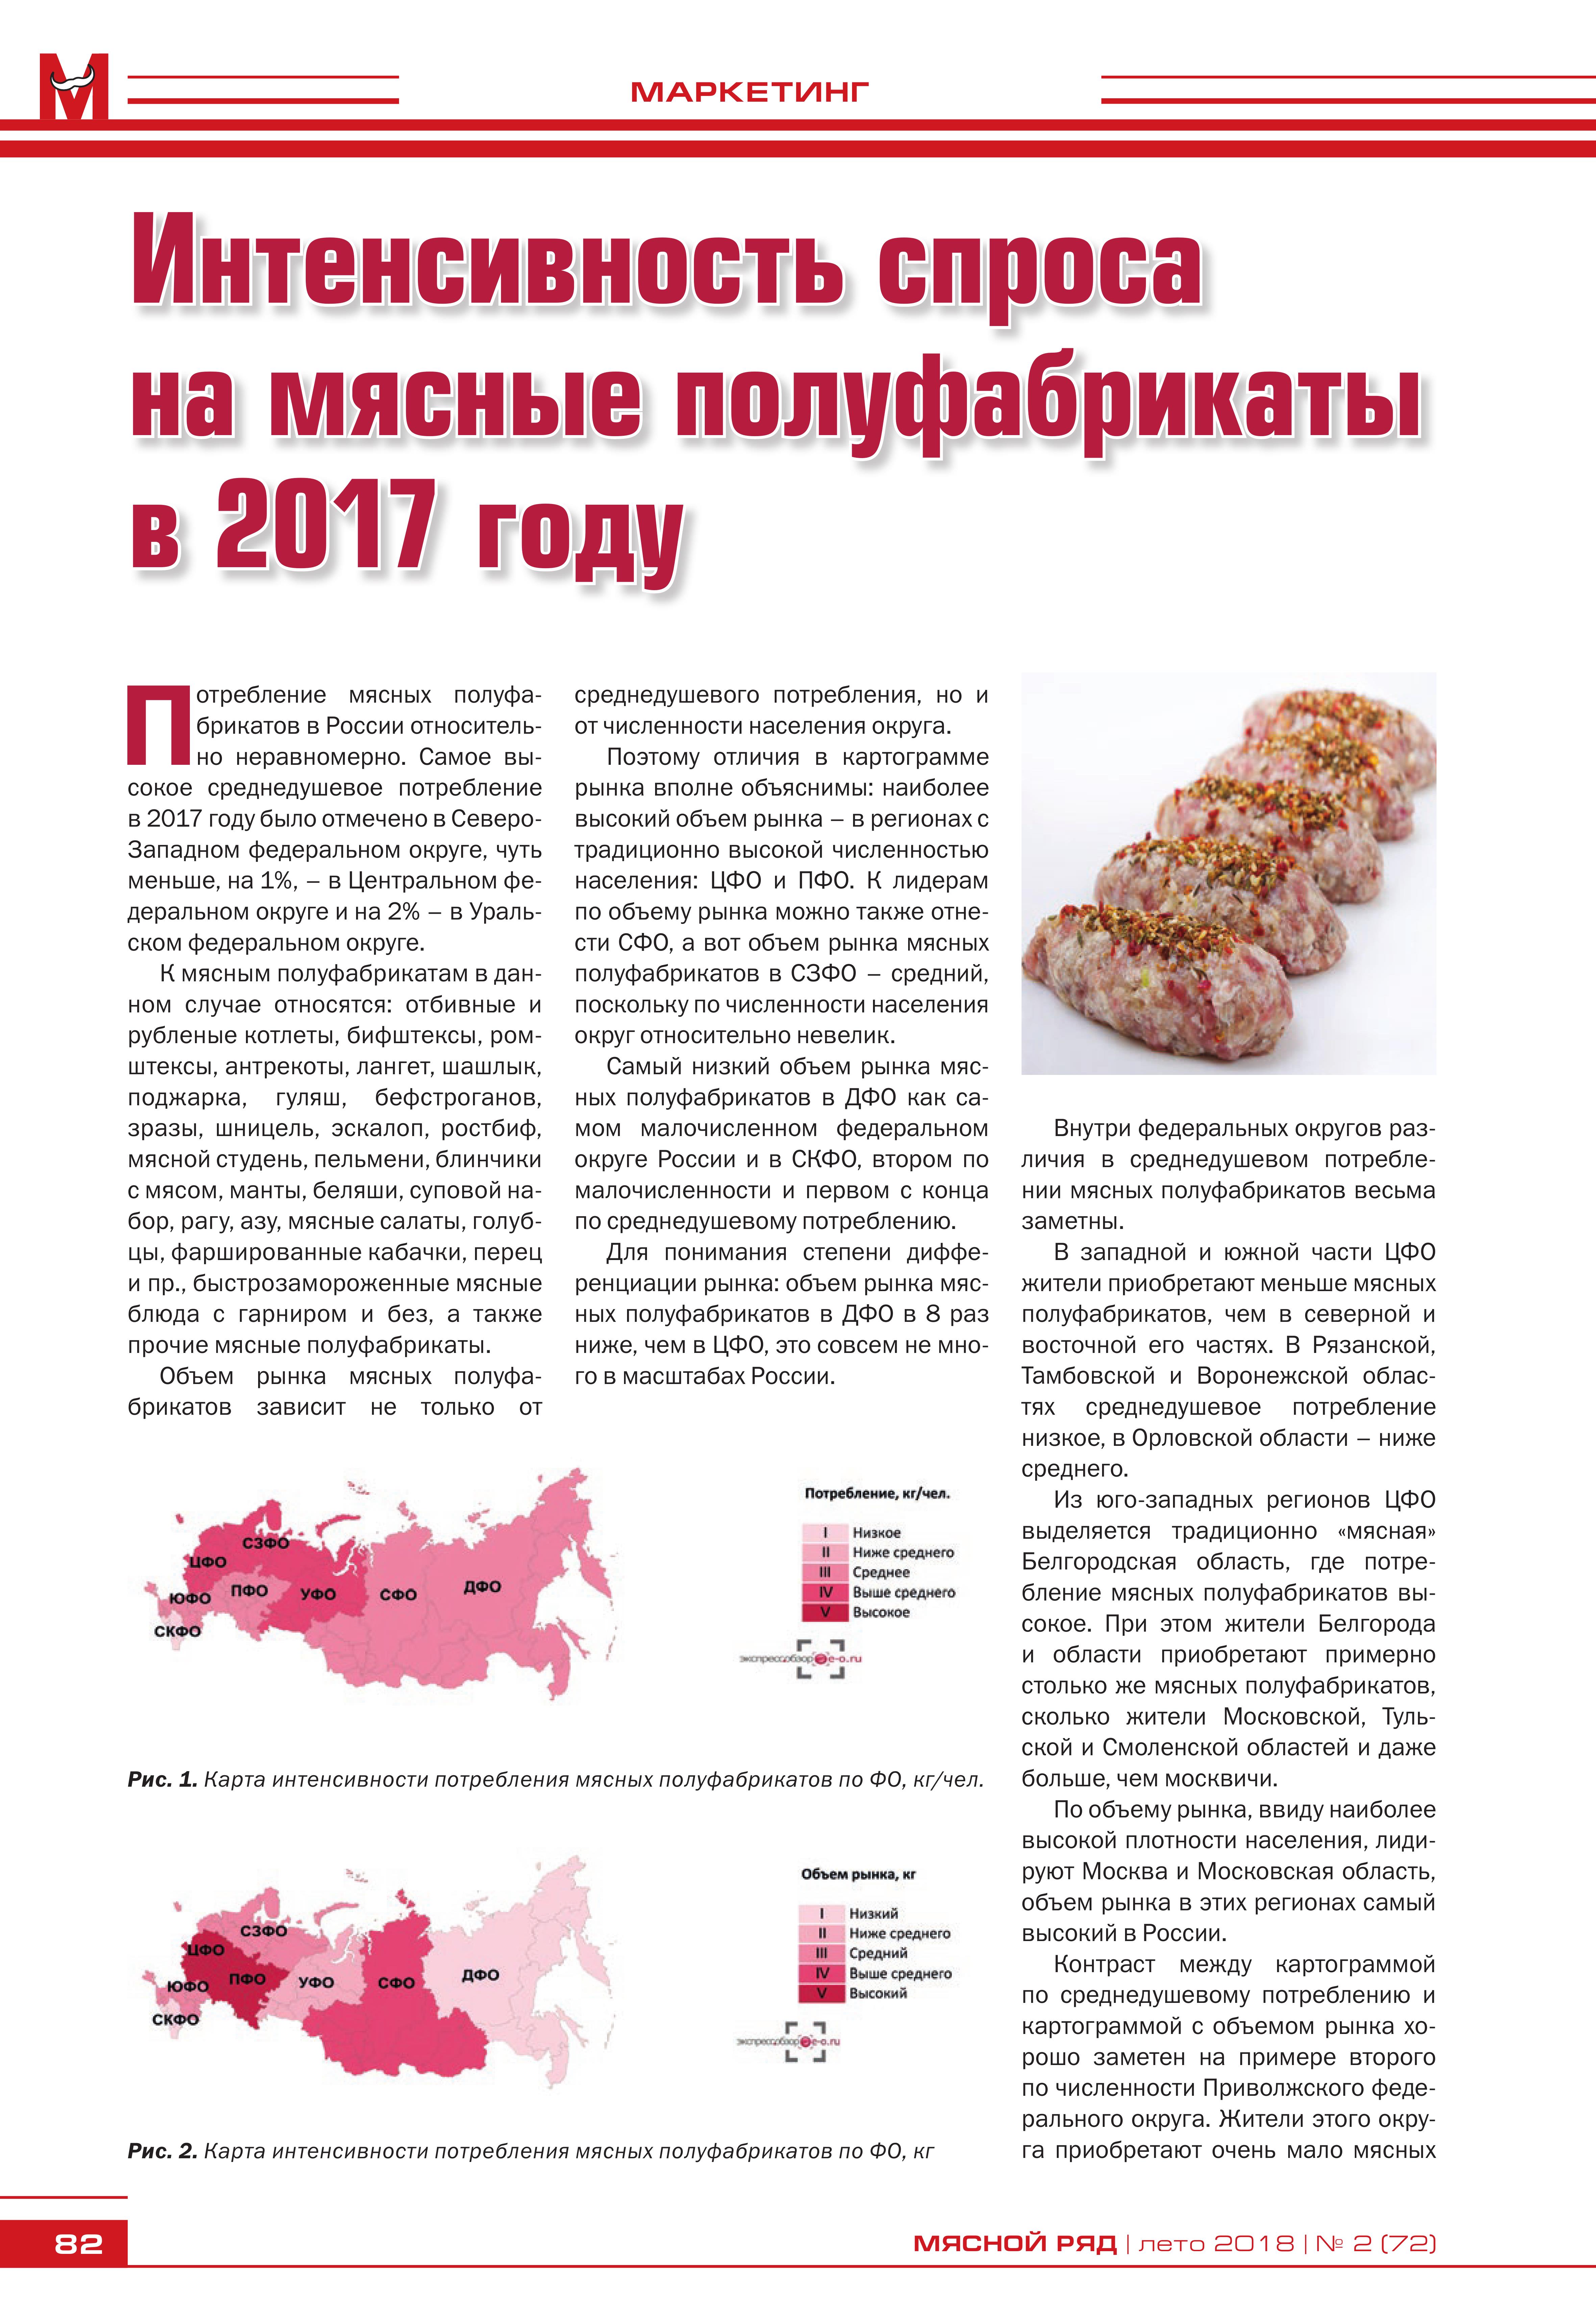 Рынок мясных полуфабрикатов в России 2017 год